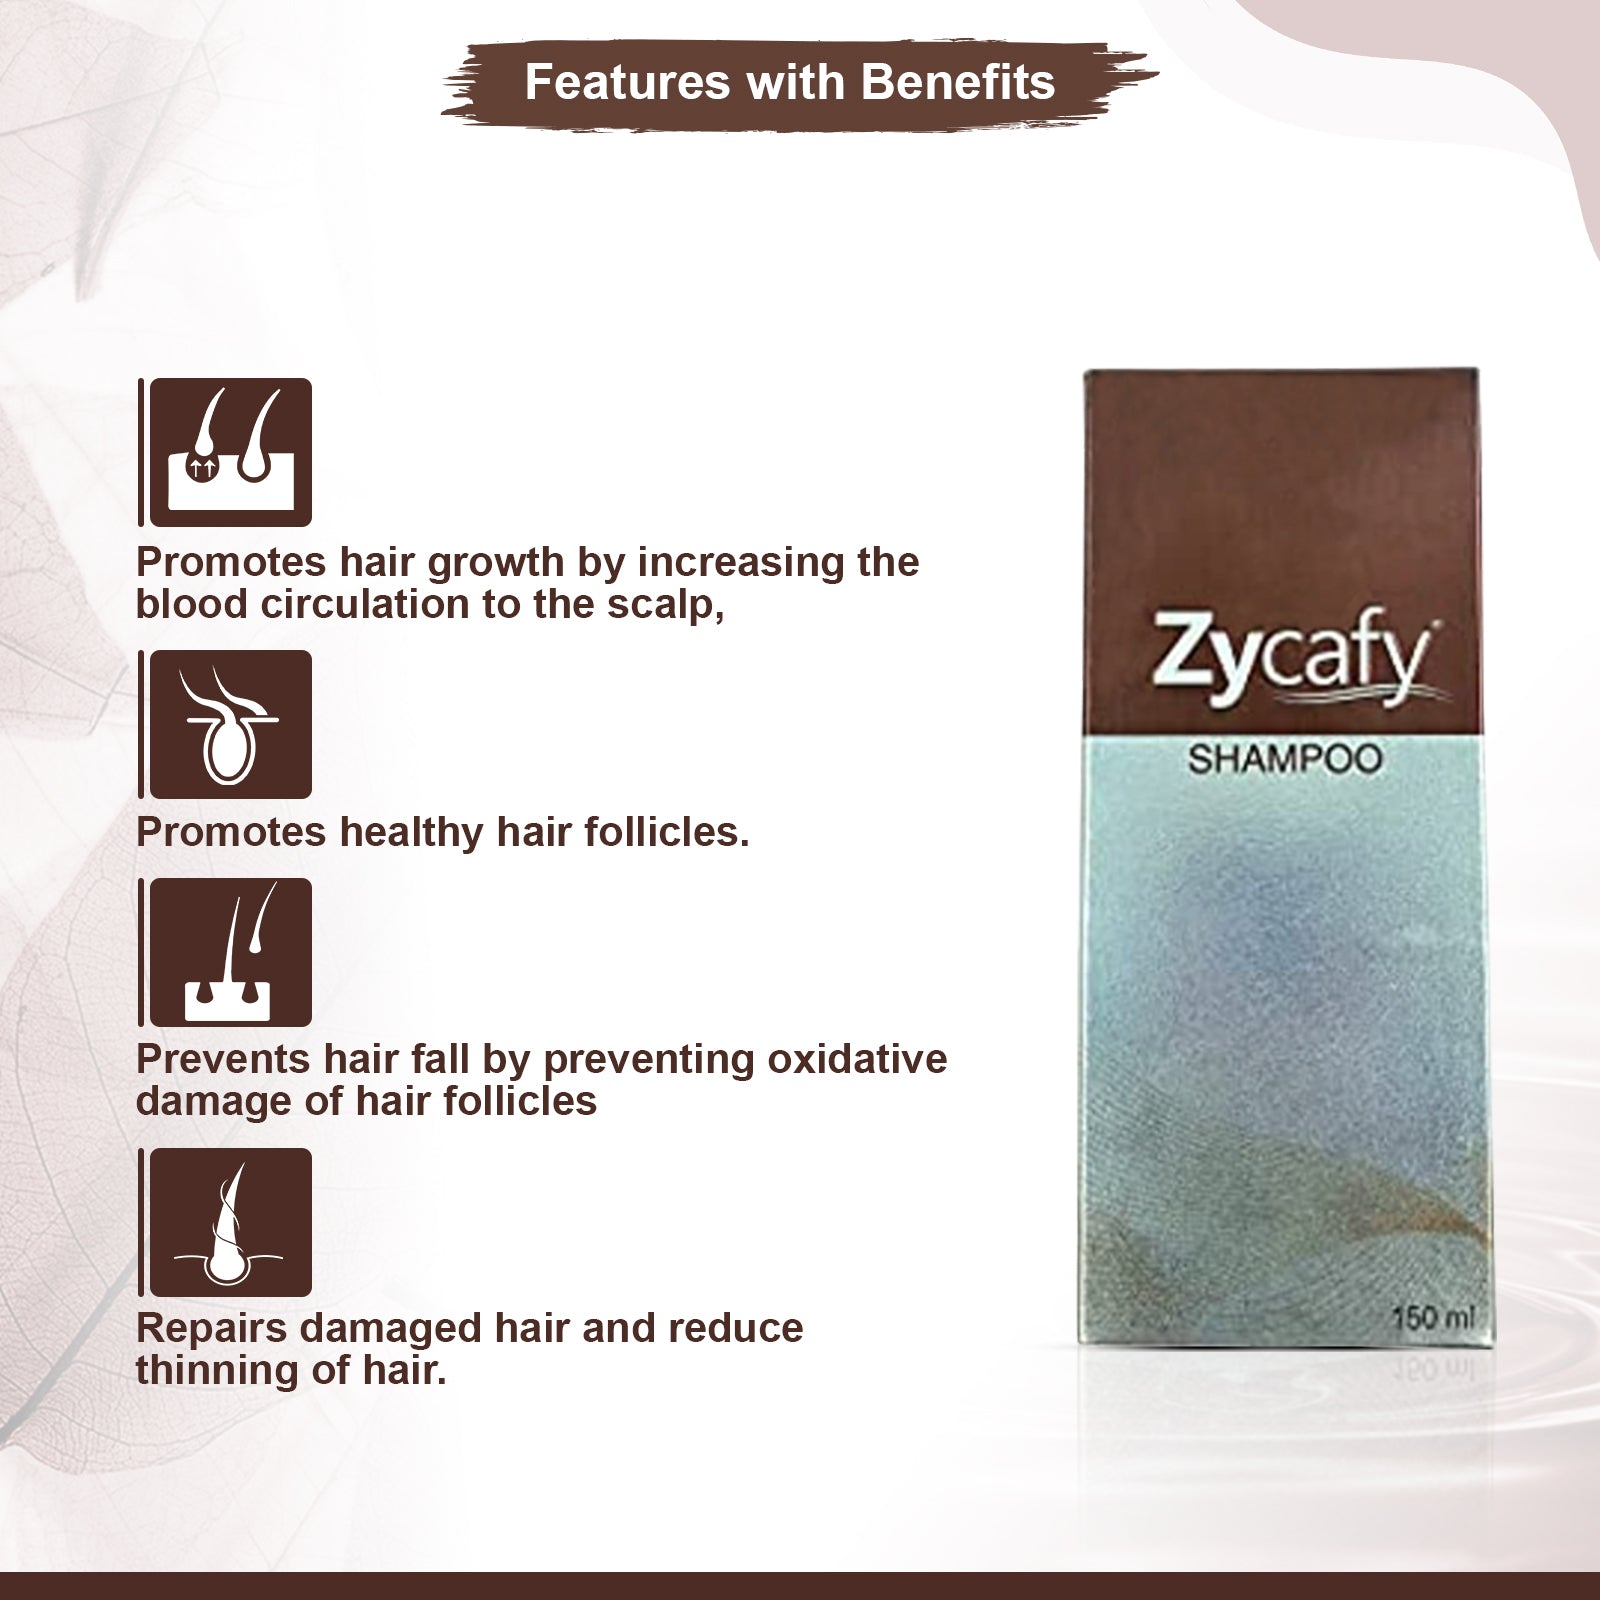 Zycafy Shampoo